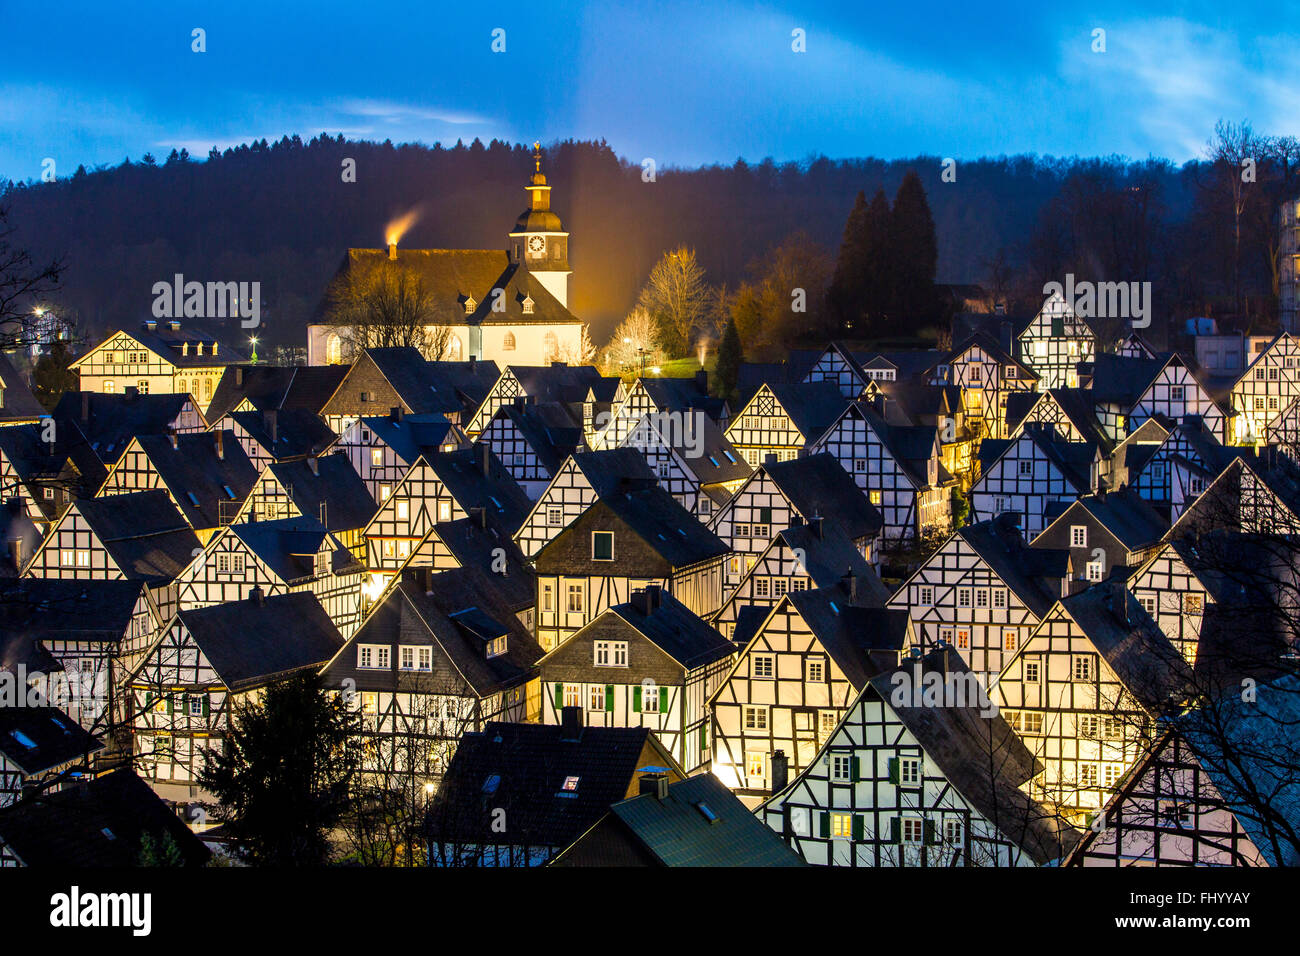 Historische Altstadt, Tudor-Stil Häuser in Freudenberg, Deutschland, Panoramablick über die Innenstadt, Stockfoto